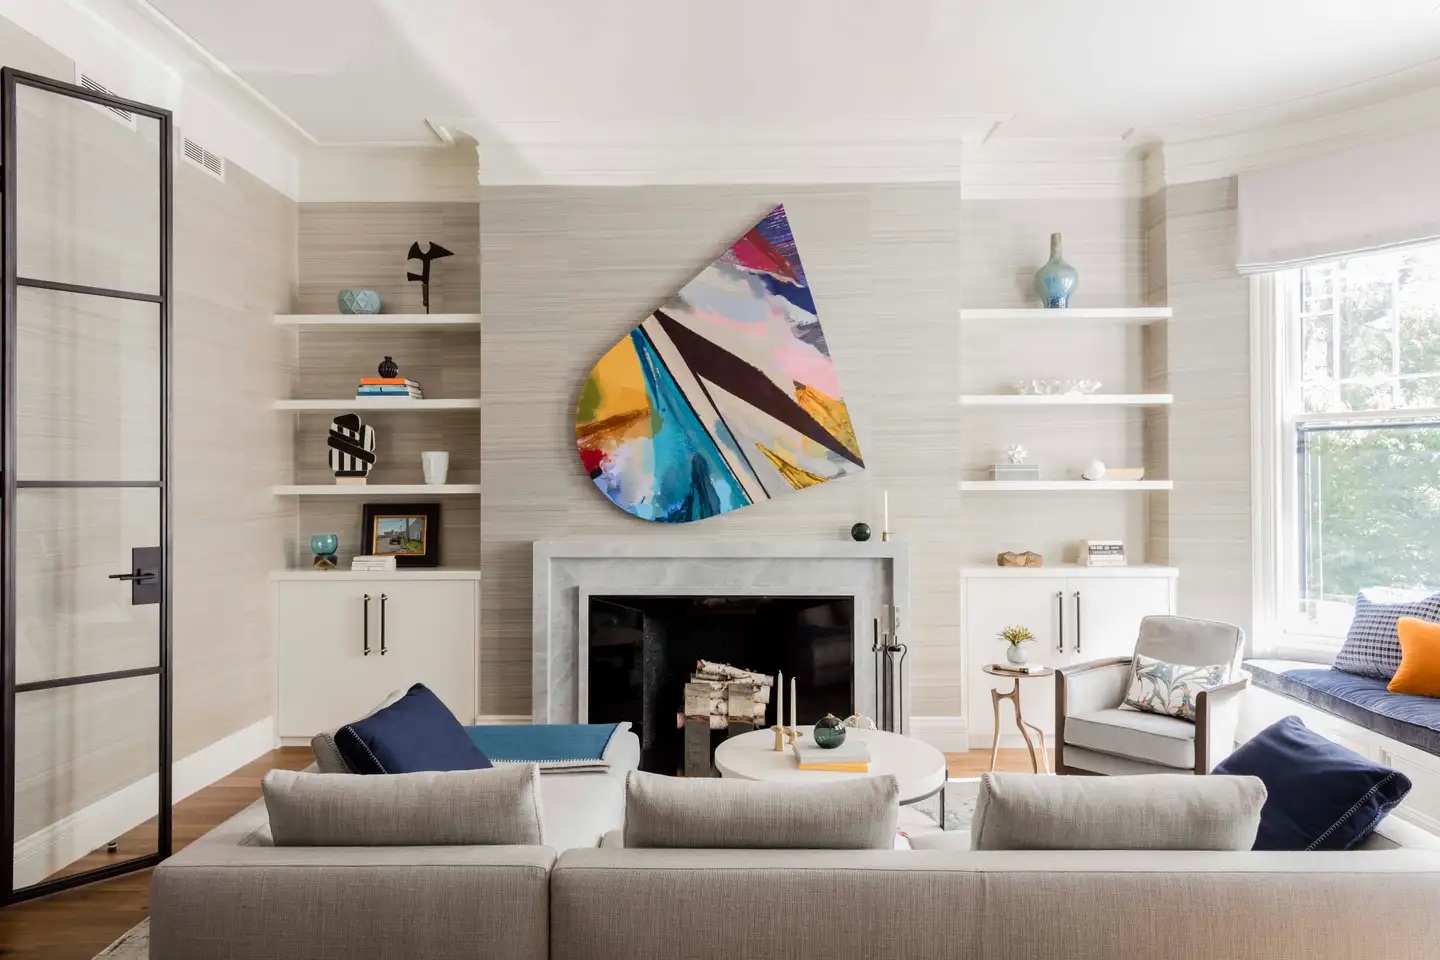 Living room designed by Elms Interior Design in Boston's Back Bay neighborhood